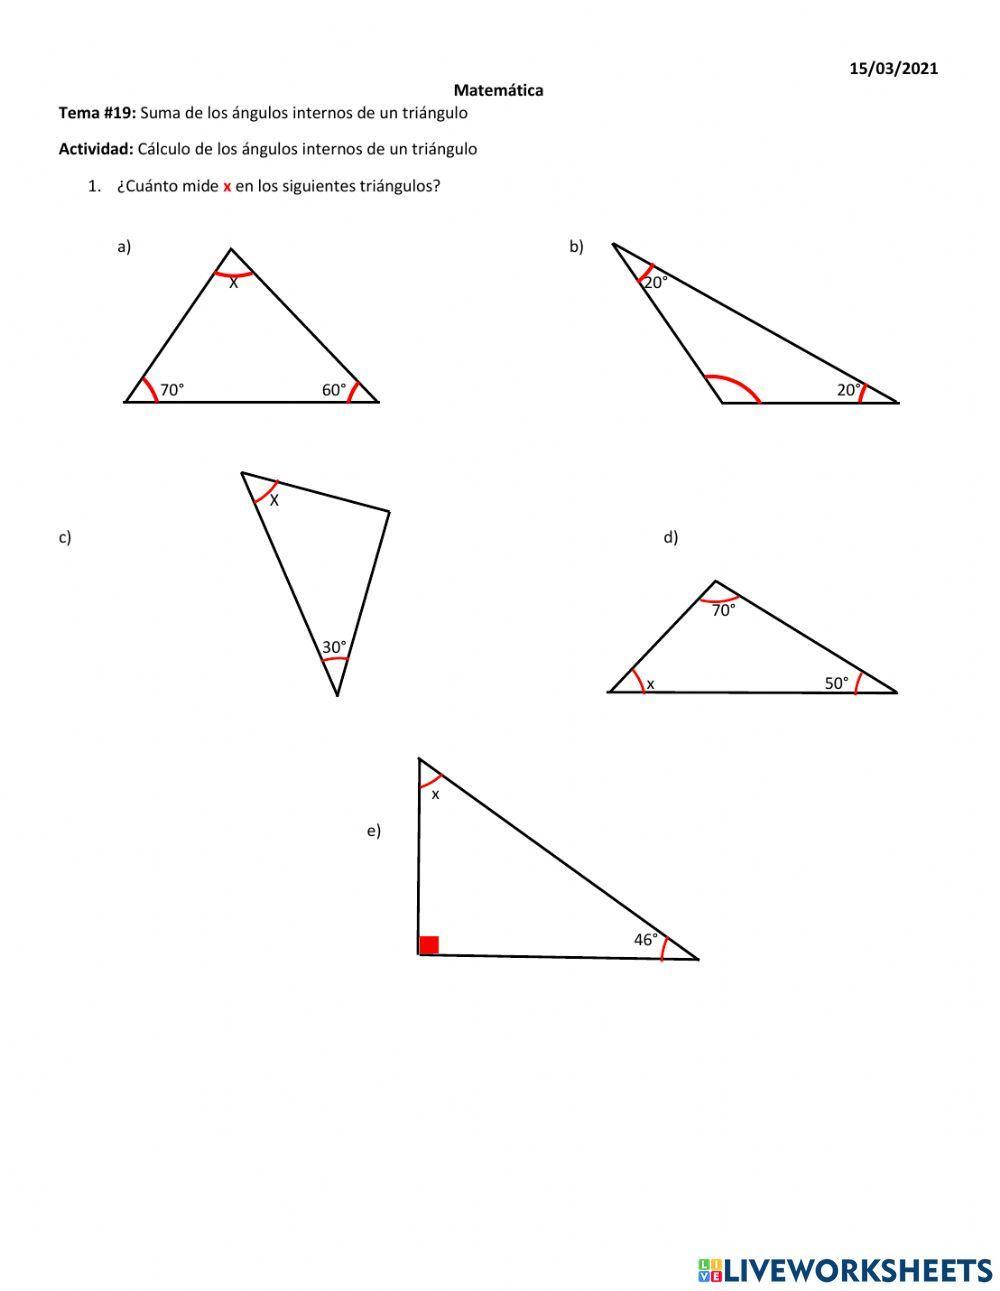 Suma de los ángulos internos en un triángulo